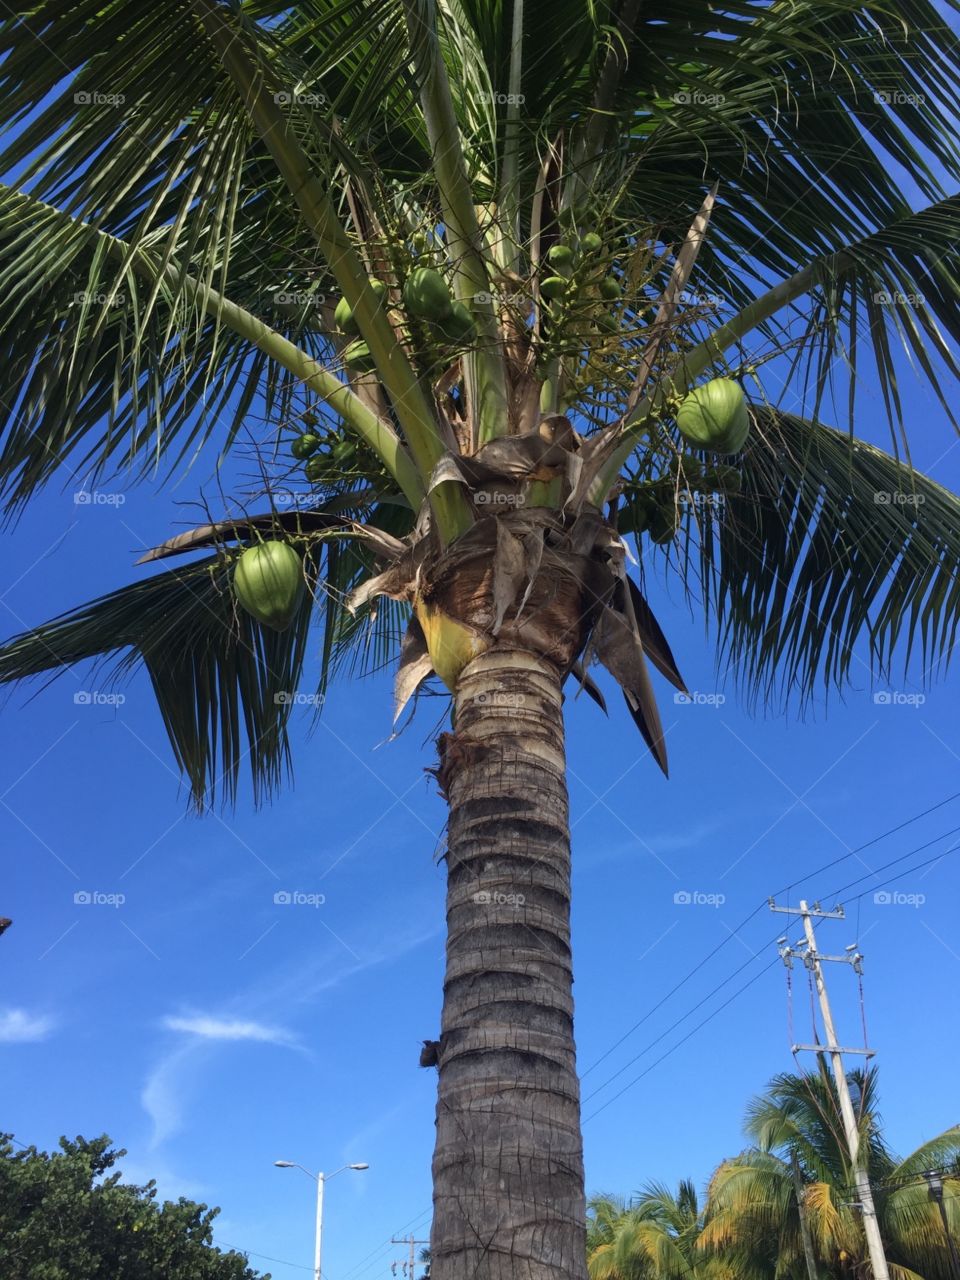 #palm #sky #nature #florida